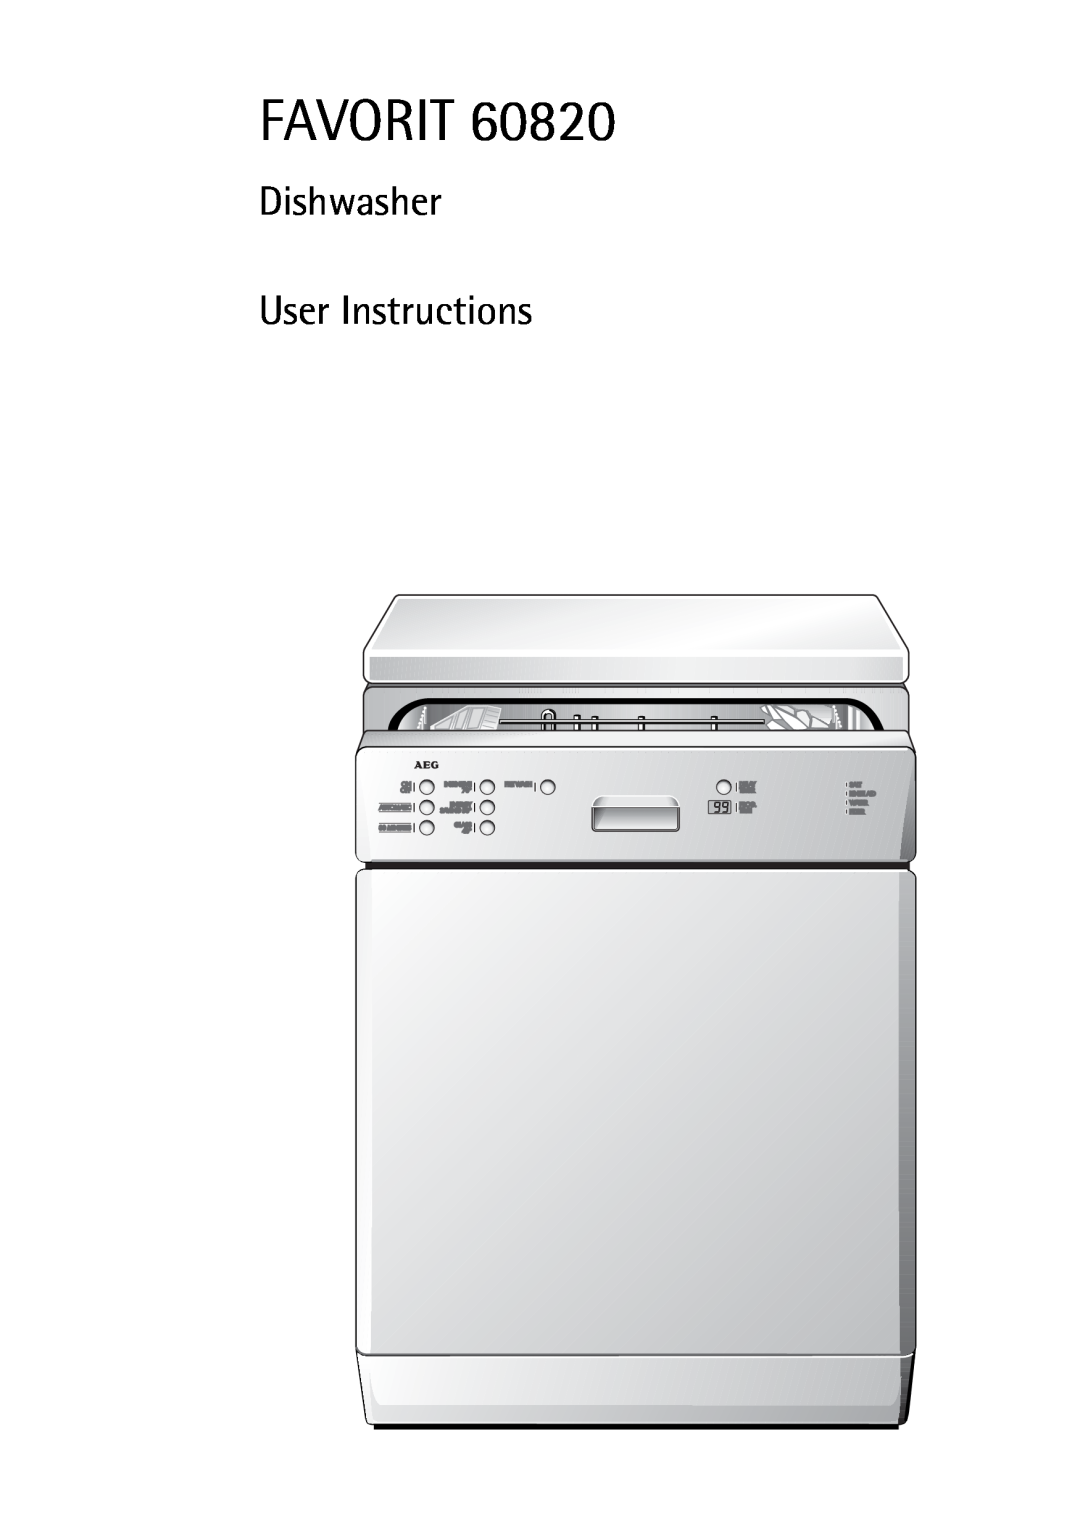 Electrolux 60820 manual Favorit, Dishwasher User Instructions 